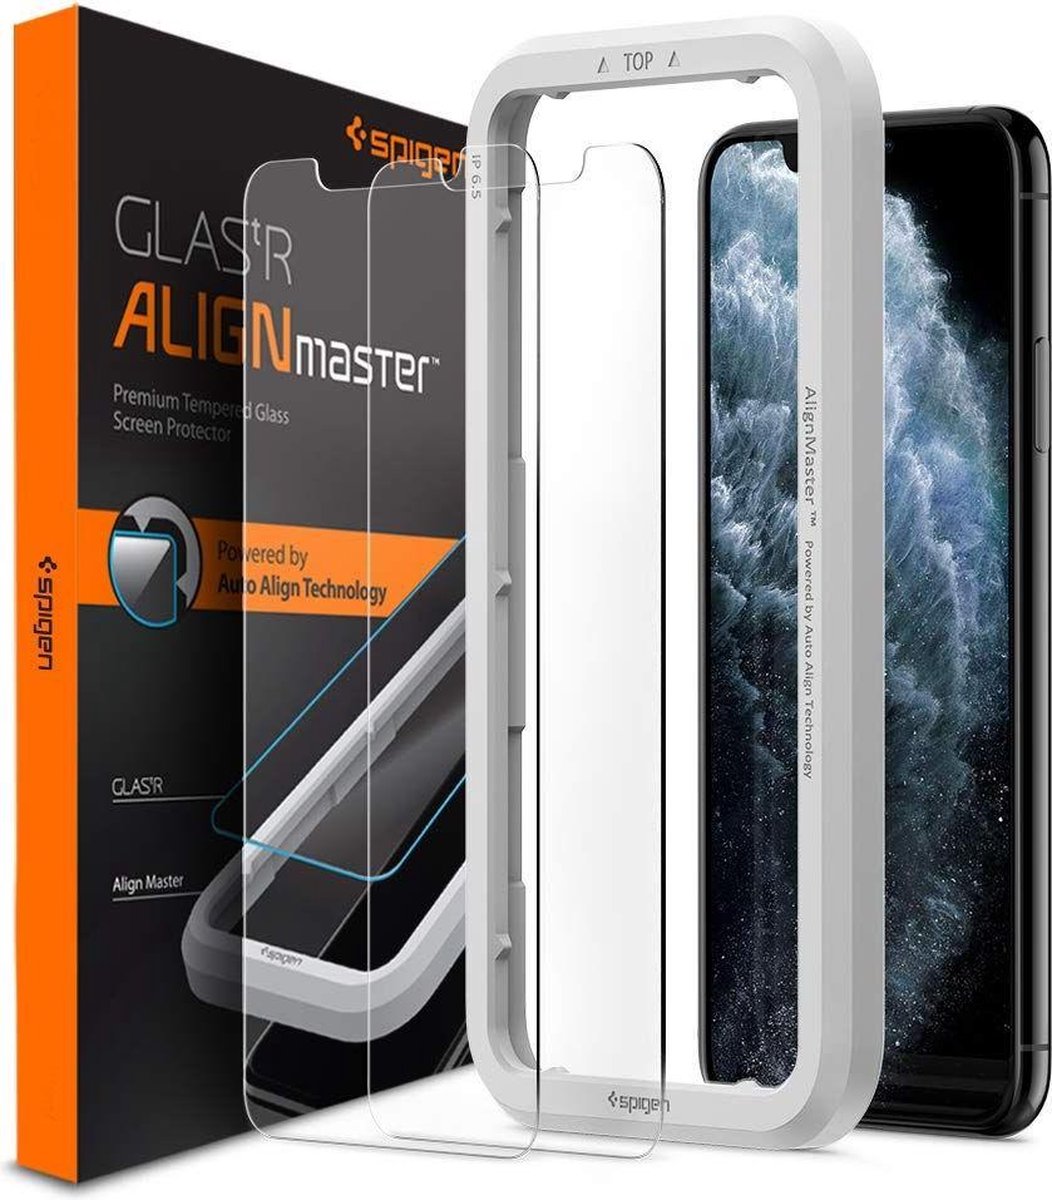 Spigen Glas tR AlignMaster (2 Pack) + Frame screenprotector voor iPhone XR en iPhone 11 - Spigen